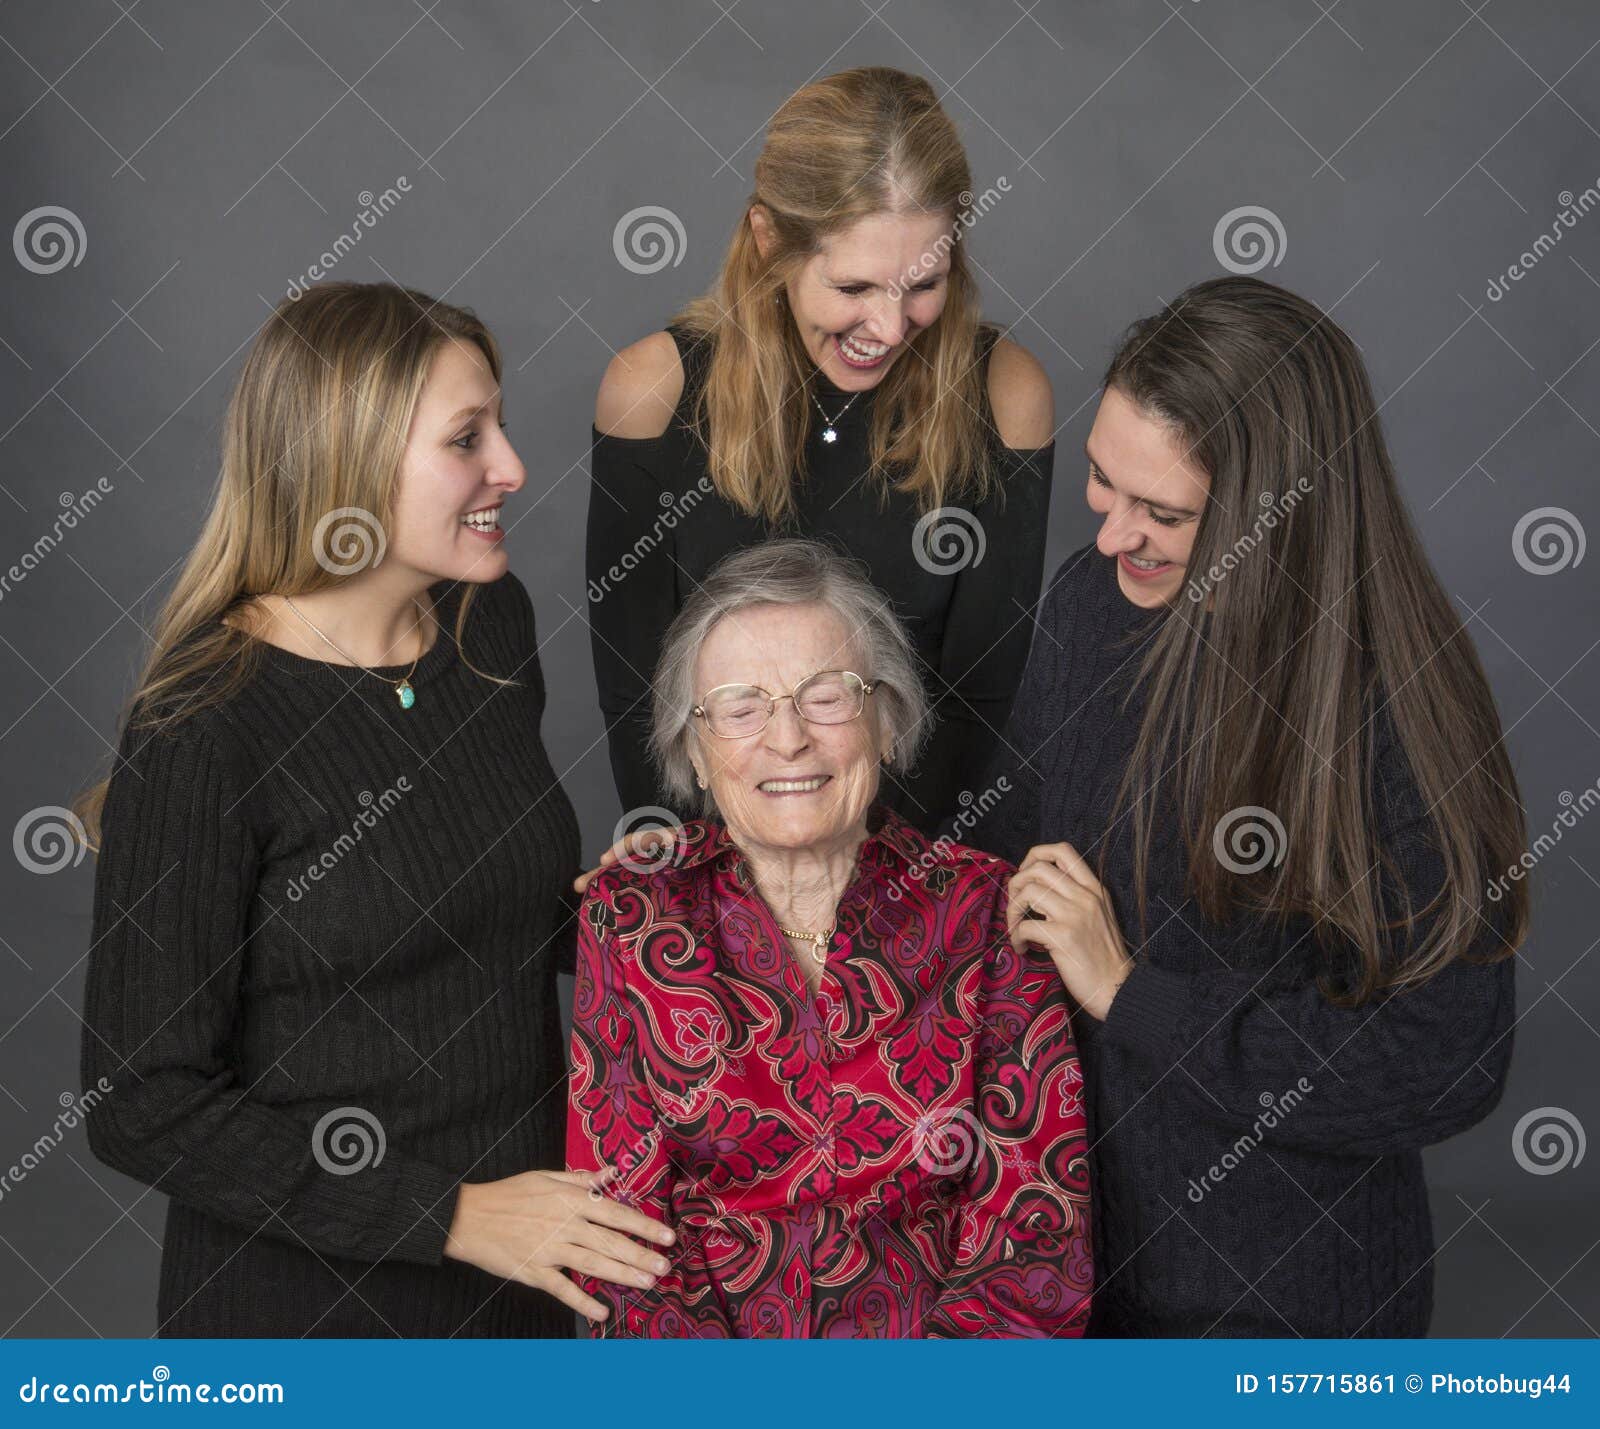 空白背景的三个女性朋友 库存图片. 图片 包括有 表面, 背包, 关闭, 喜悦, 人力, 人员, 友谊, 题头 - 26396711